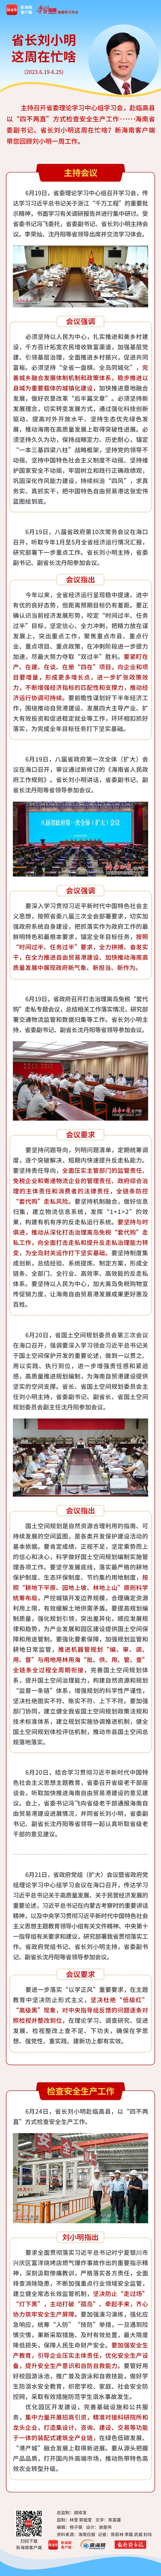 海南政情丨省长刘小明这周在忙啥？（6月19日至6月25日）